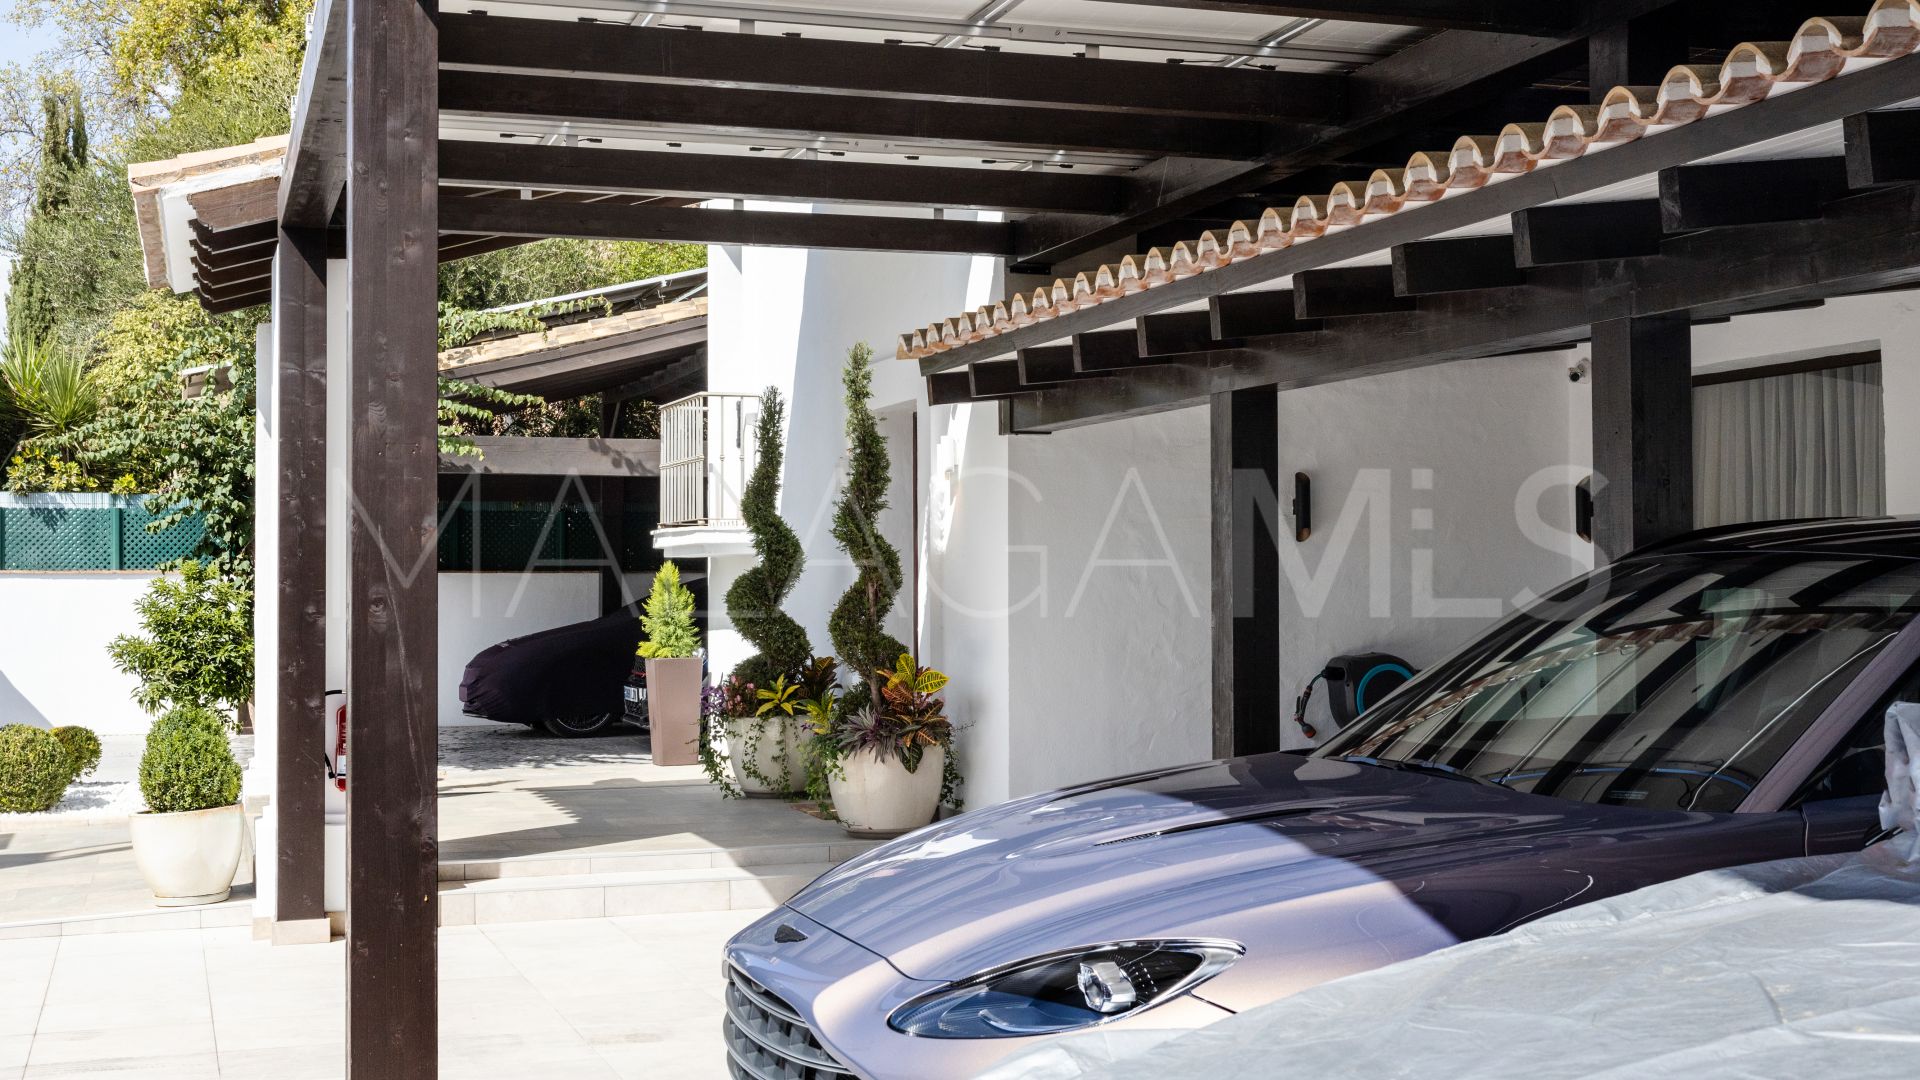 Buy villa in Marbella - Puerto Banus with 4 bedrooms